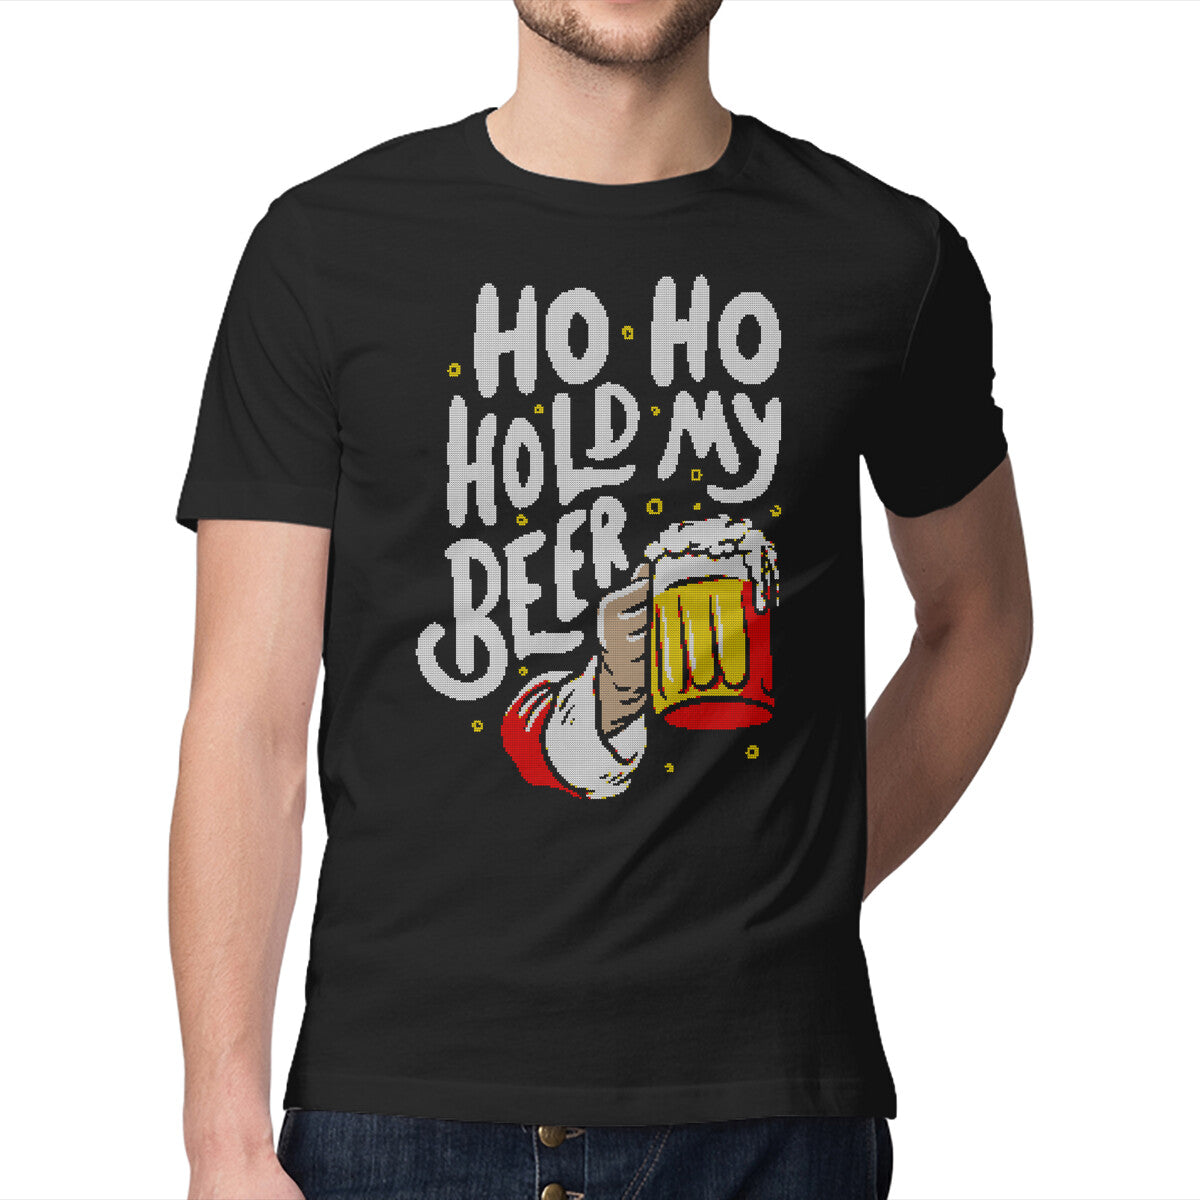 Ho, Ho, Hold My Beer Koozie®